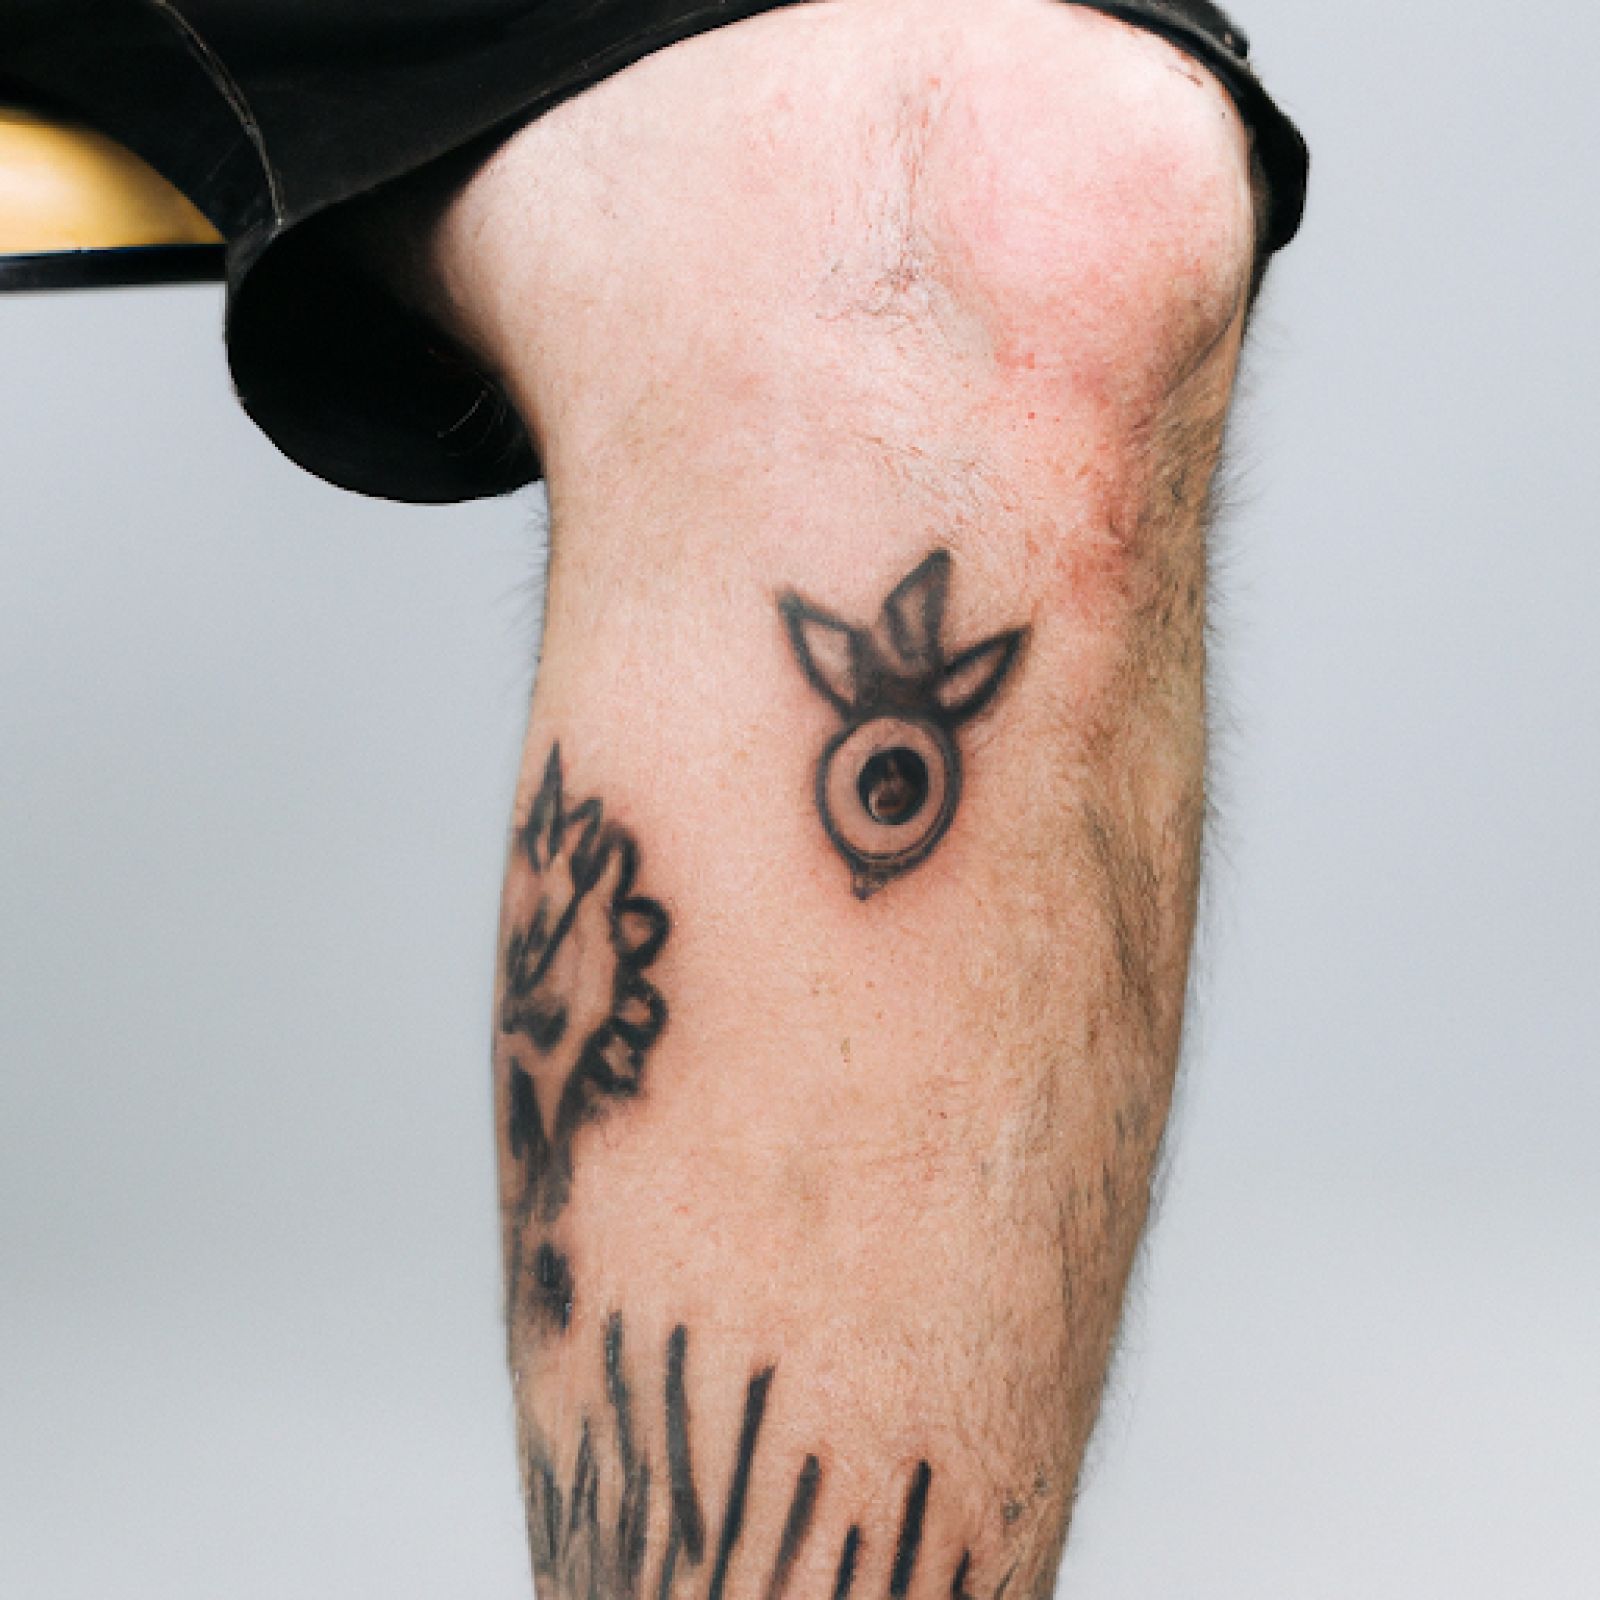 Trash polka tattoo on knee for men